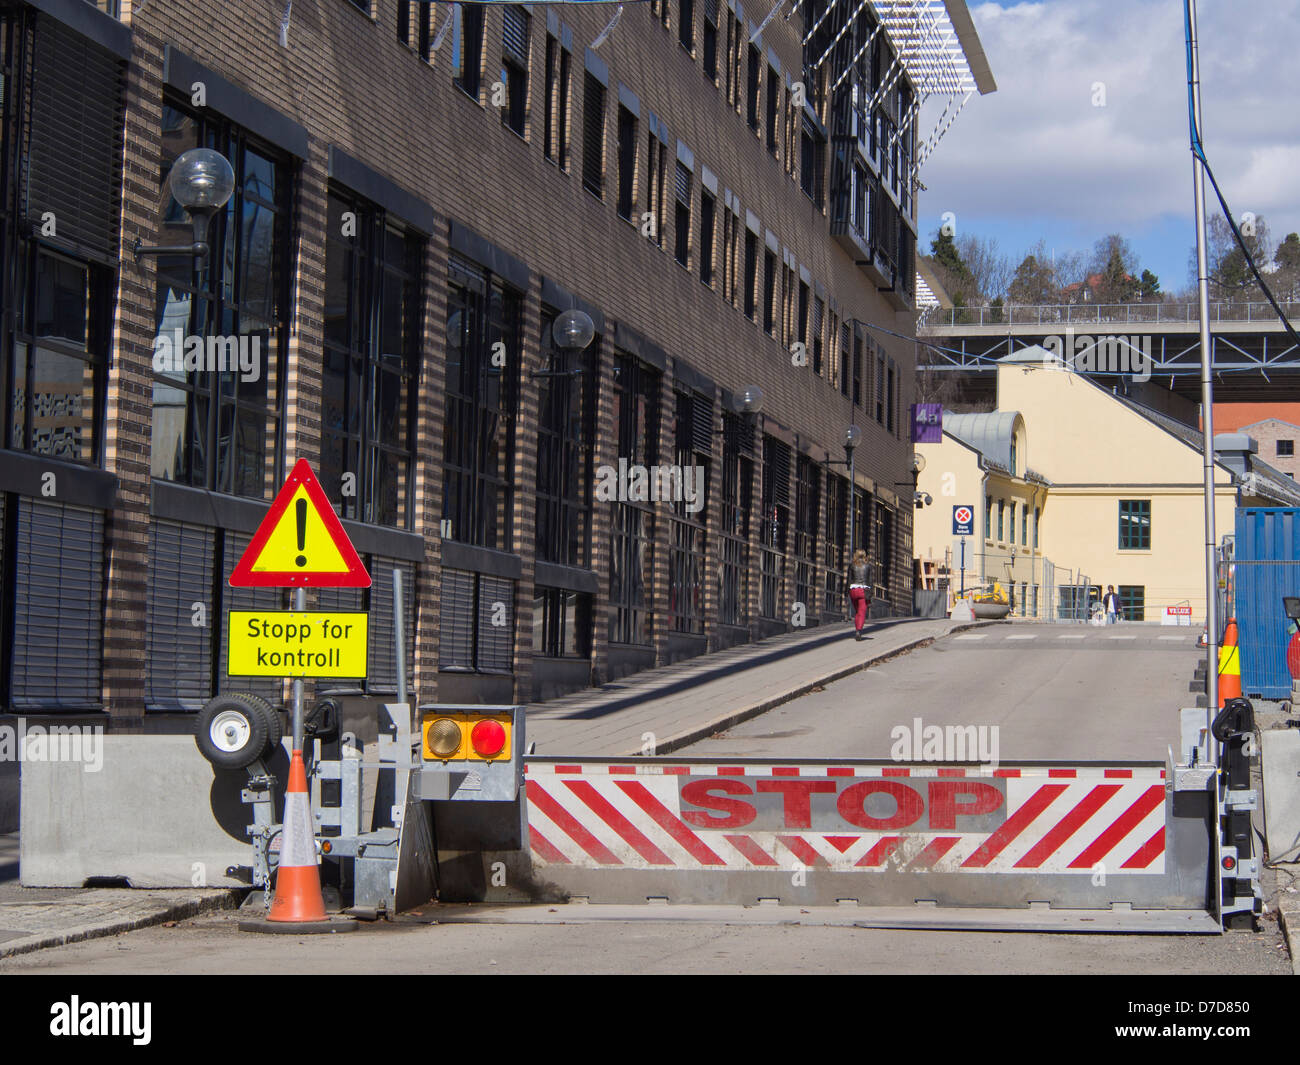 Arrêter, barrière routière, fermé à la circulation pour des raisons de sécurité, les mesures de sécurité à l'extérieur d'un bâtiment de bureaux à Oslo Norvège Banque D'Images